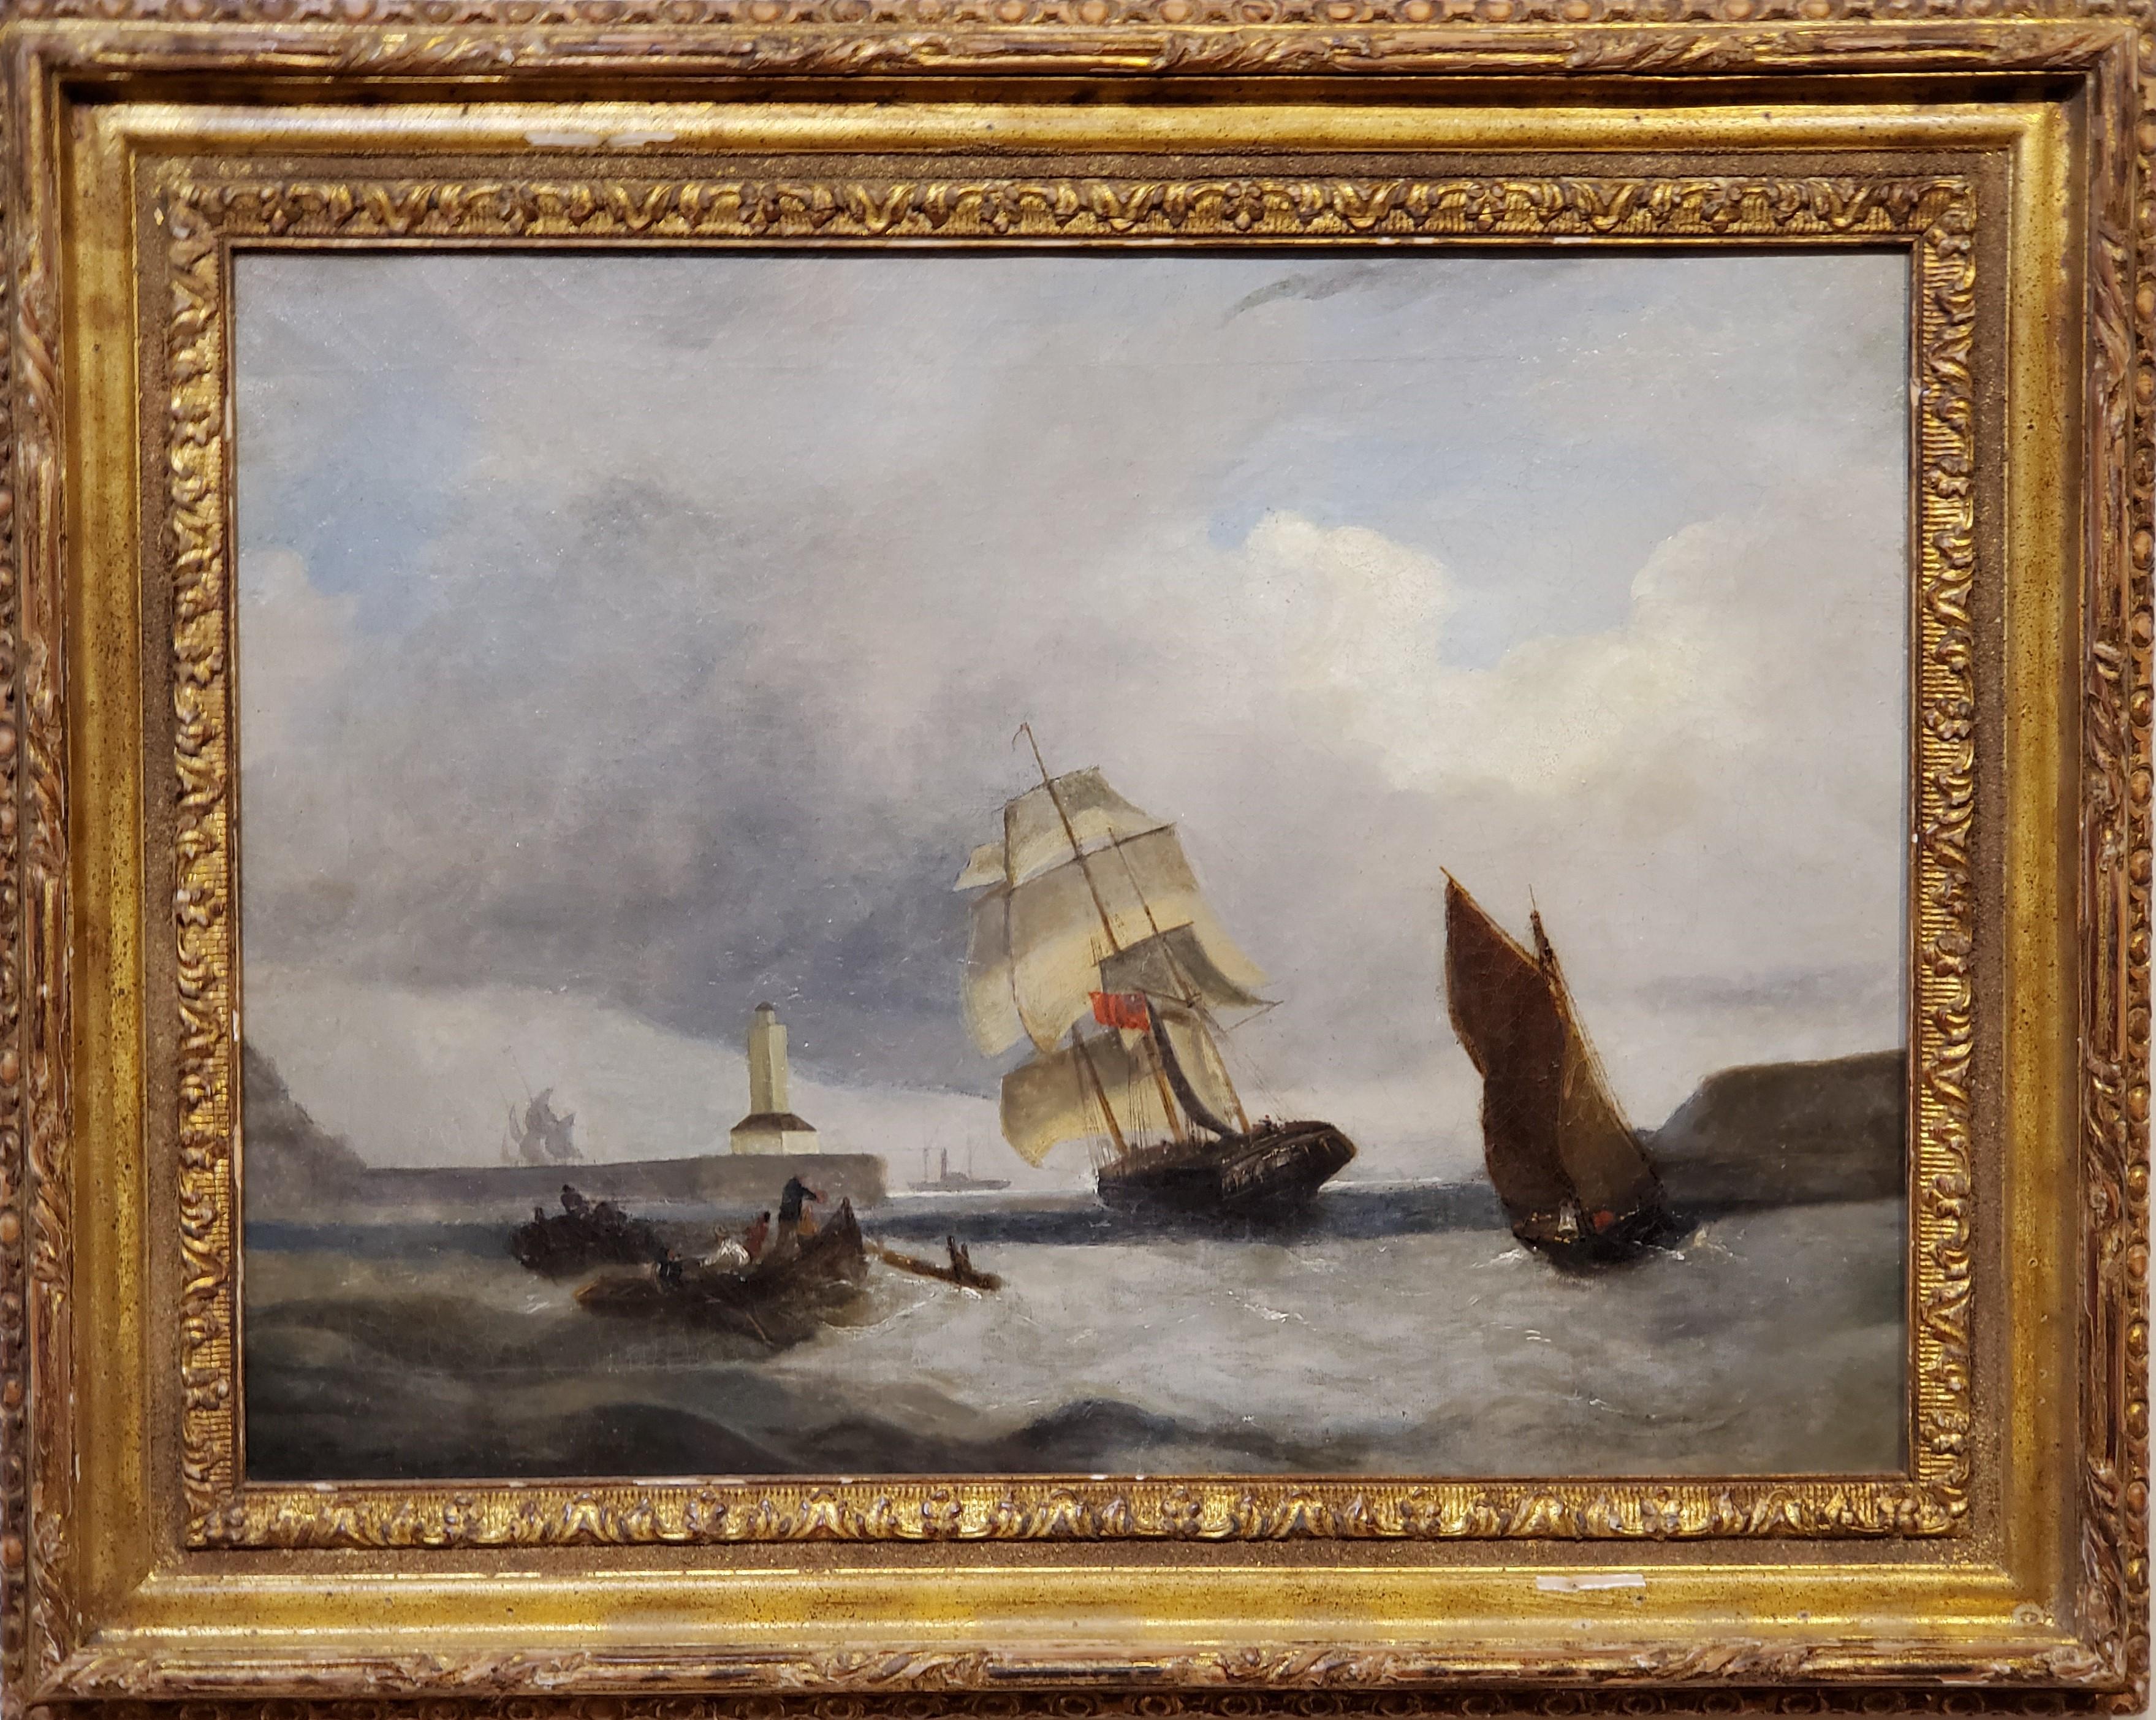 A W Harrison Landscape Painting – Marinelandschaft des späten 19. Jahrhunderts:: Gemälde eines Schiffes:: das in der Nähe eines Leuchtturms steht